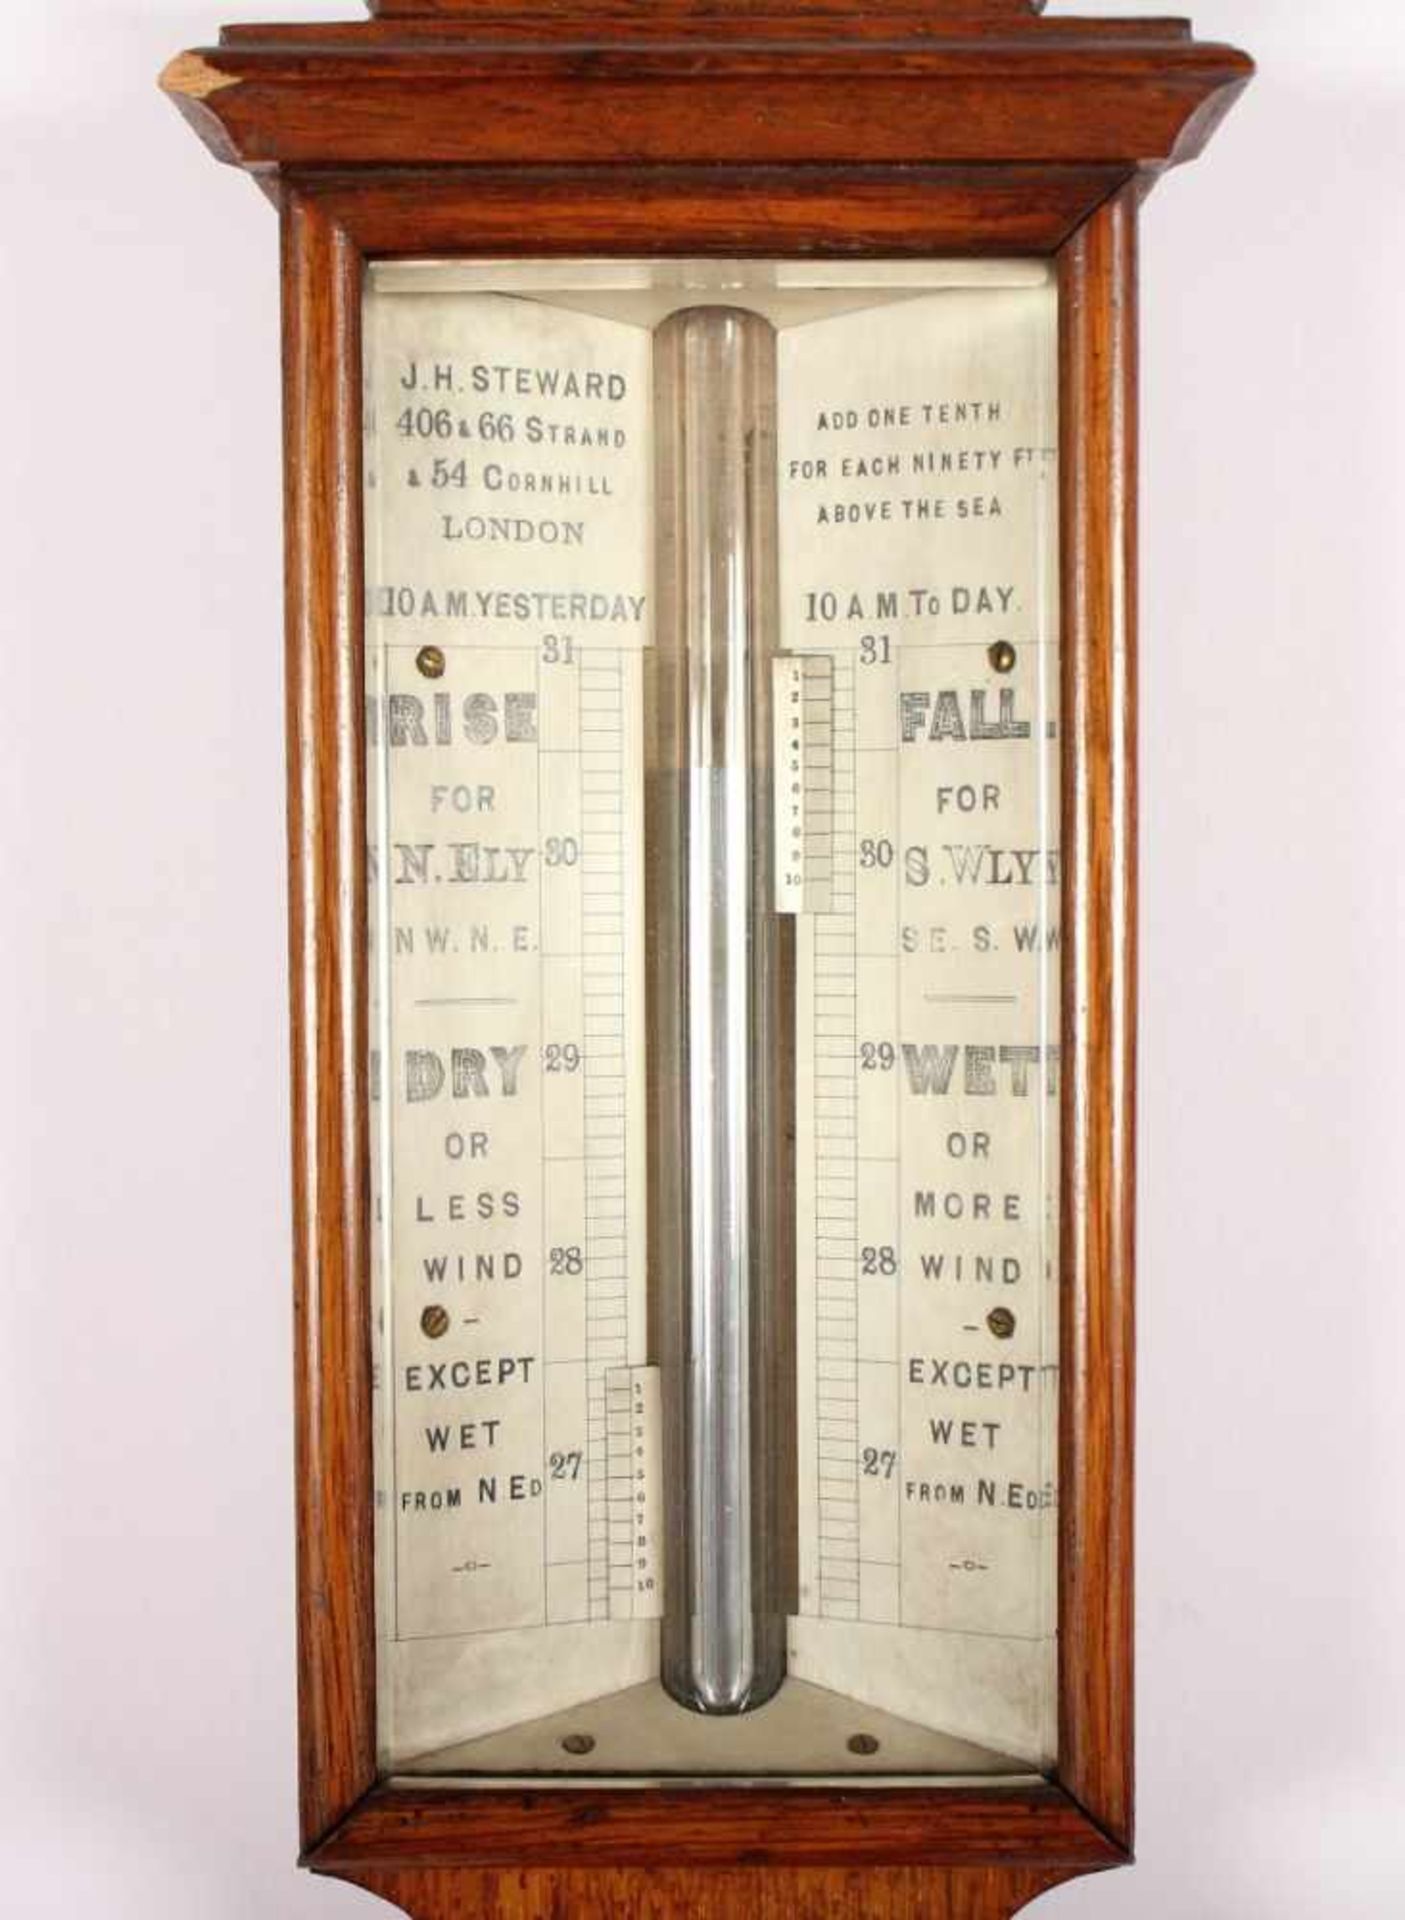 BAROMETER, Nussholzgehäuse, Quecksilbersäule, Thermometer, min.besch., L 95, J.H. STEWARD, LONDON, - Bild 2 aus 3